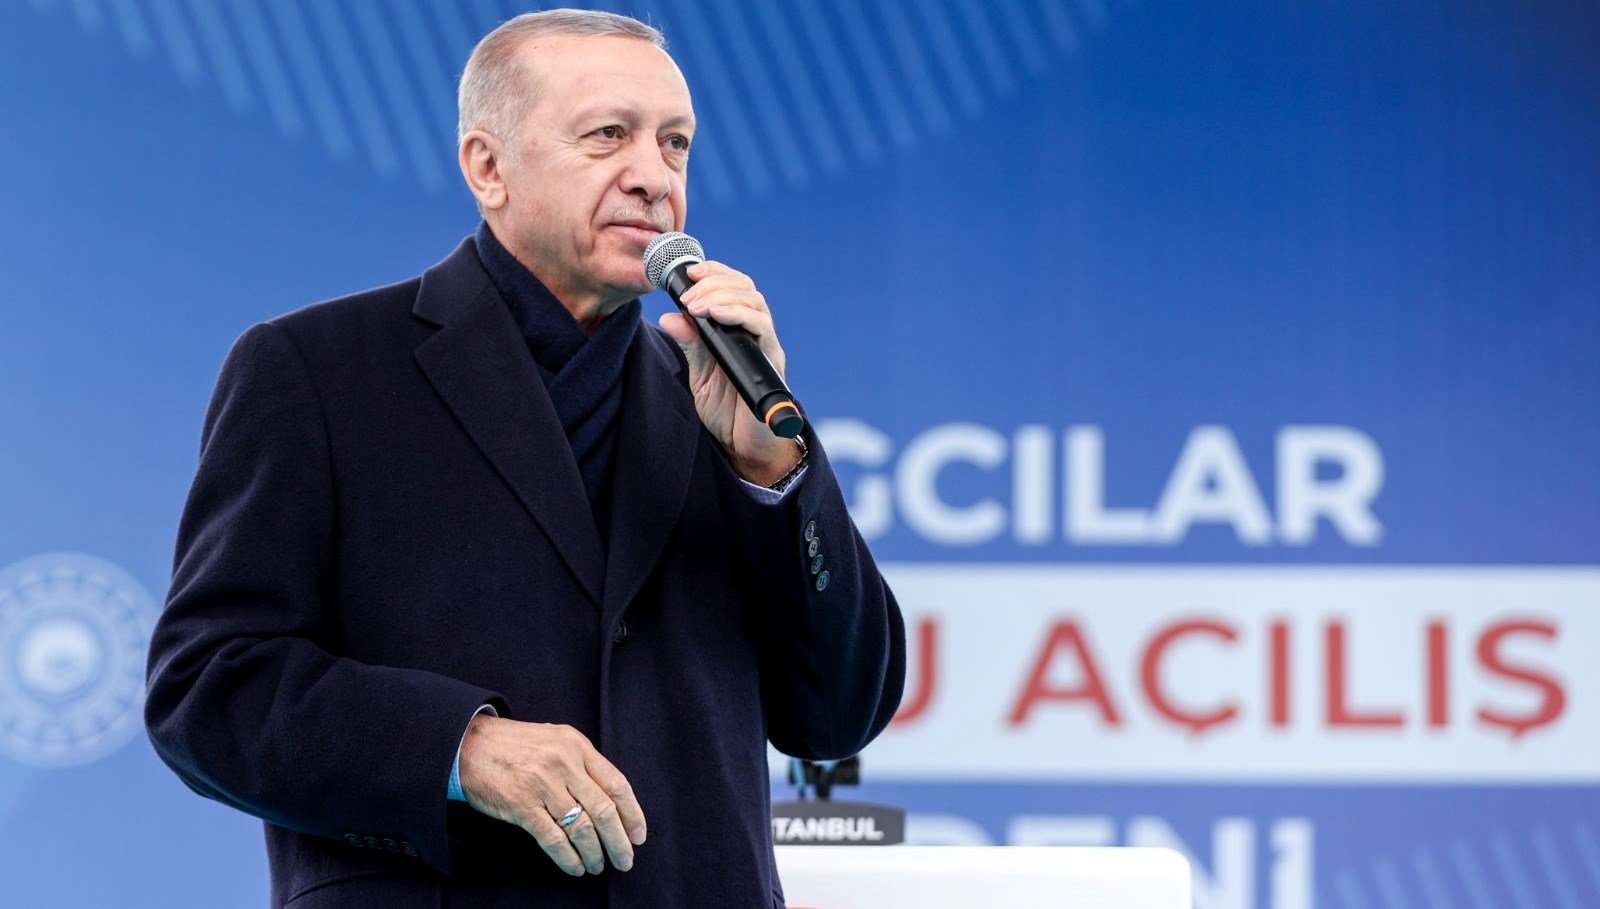 Cumhurbaşkanı Erdoğan’dan Akşener’e kurşun tepkisi: Gerçek ortaya çıktı, özür dileyecek misin?